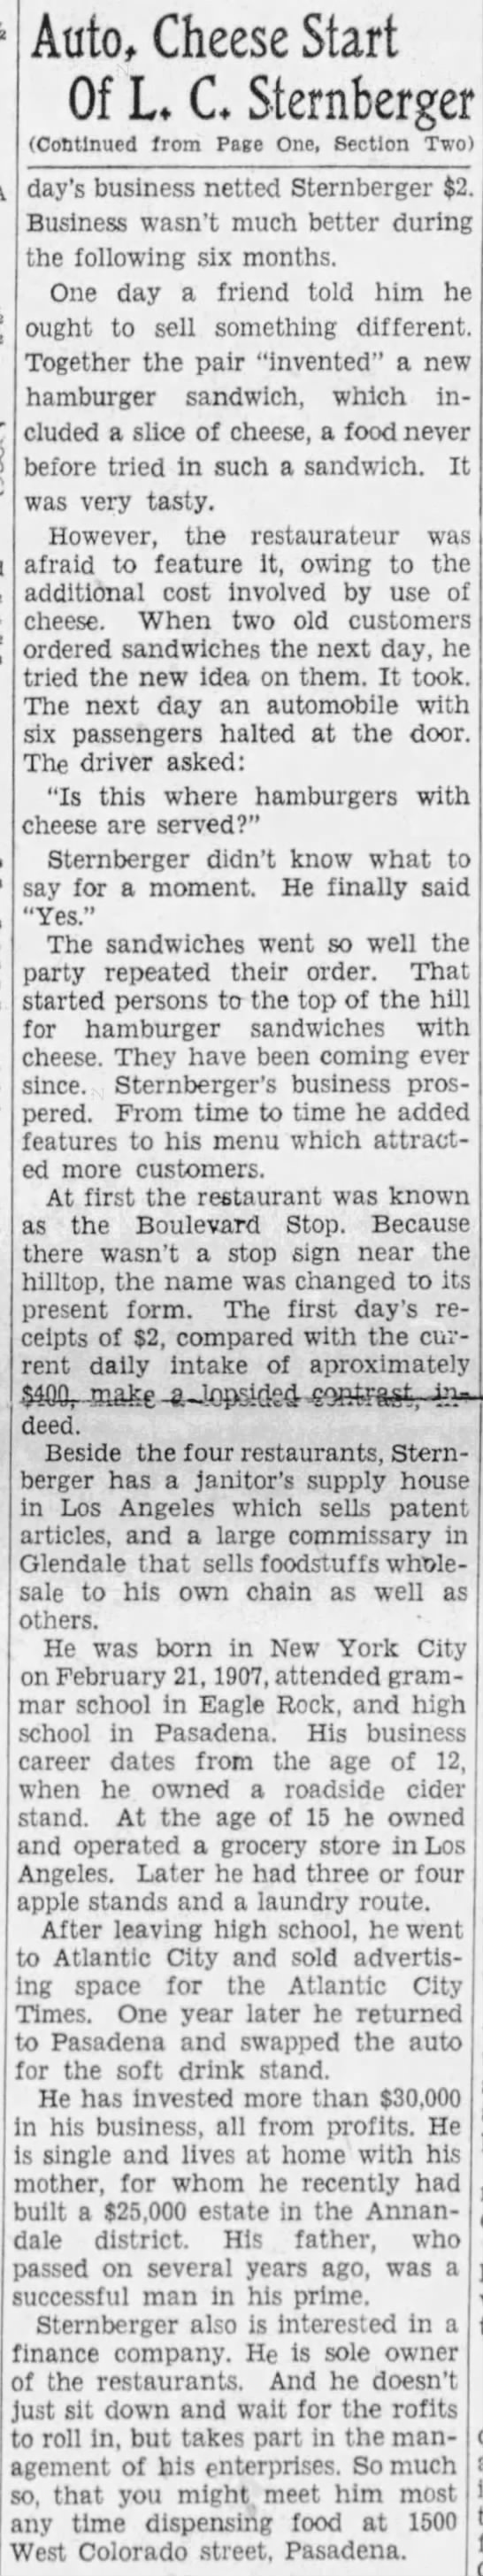 Rite Spot & Lionel Sternberger & Cheeseburgers (1931). - 